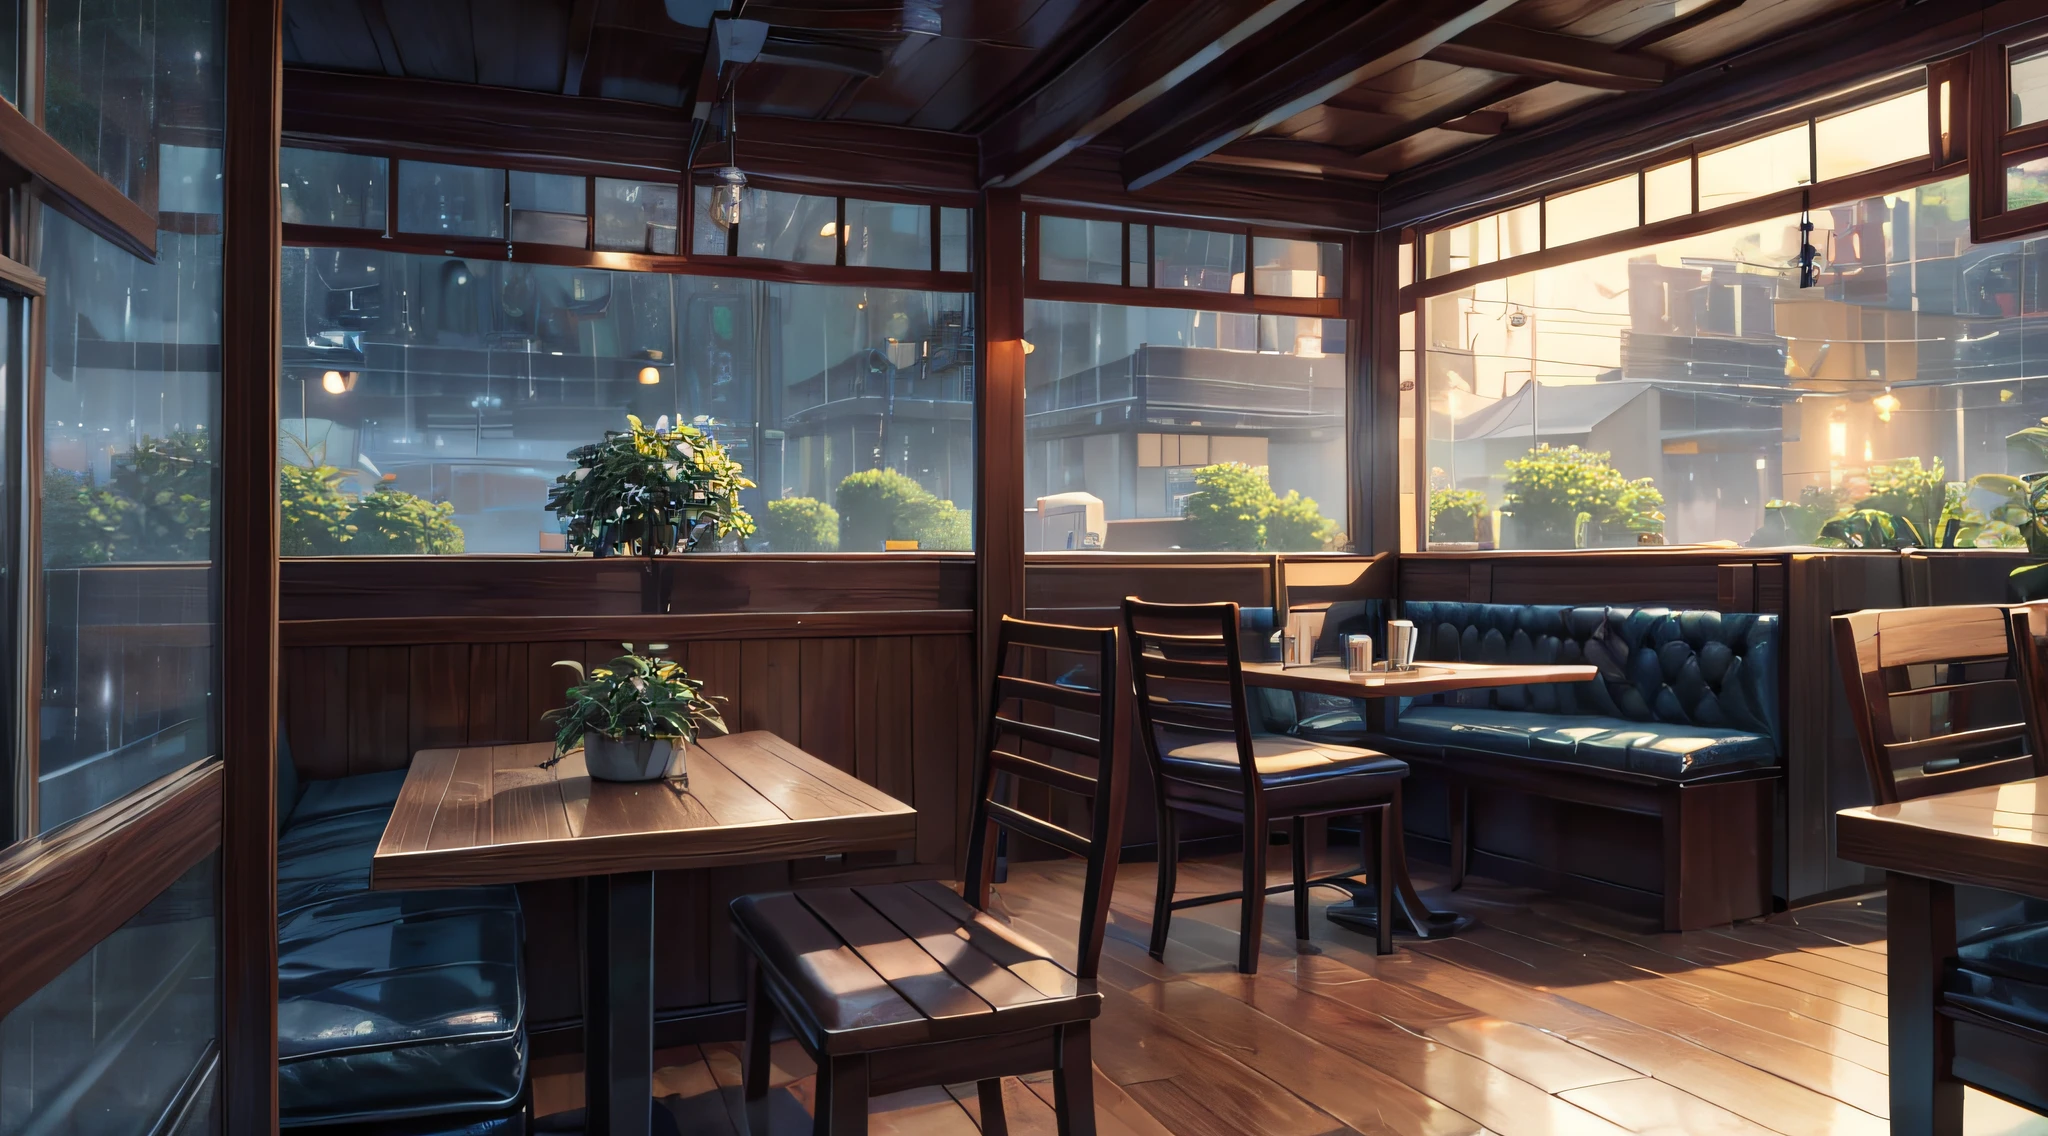 Una escena mágica desde una pequeña cafetería en una tarde lluviosa., capturado por Makoto Shinkai, Paleta de colores suaves que realza la atmósfera., Músico de baja fidelidad que añade una capa de sonido única, atmósfera de serenidad y convivencia (Mejor calidad), (Resolución 8K), (resolución ultra alta)